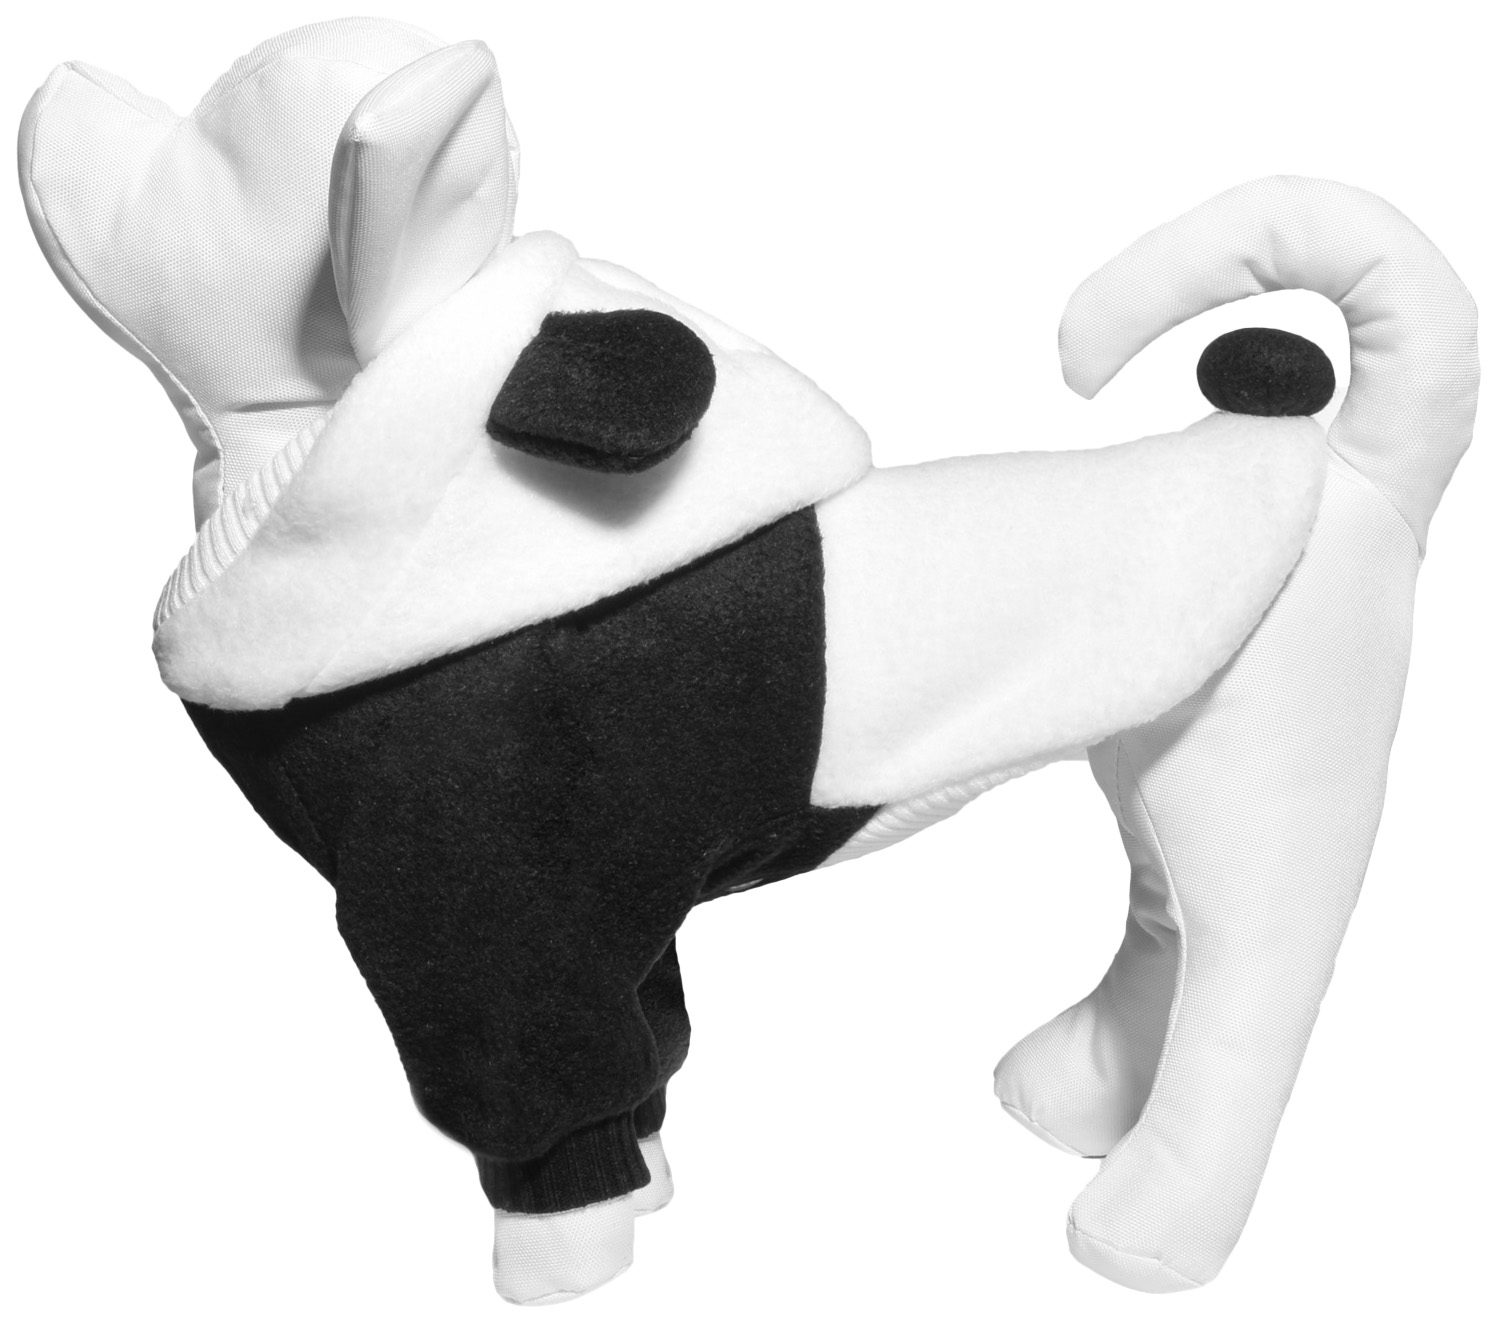 Толстовка для собак Tappi одежда Спайк, унисекс, белый, черный, M, длина спины 27 см